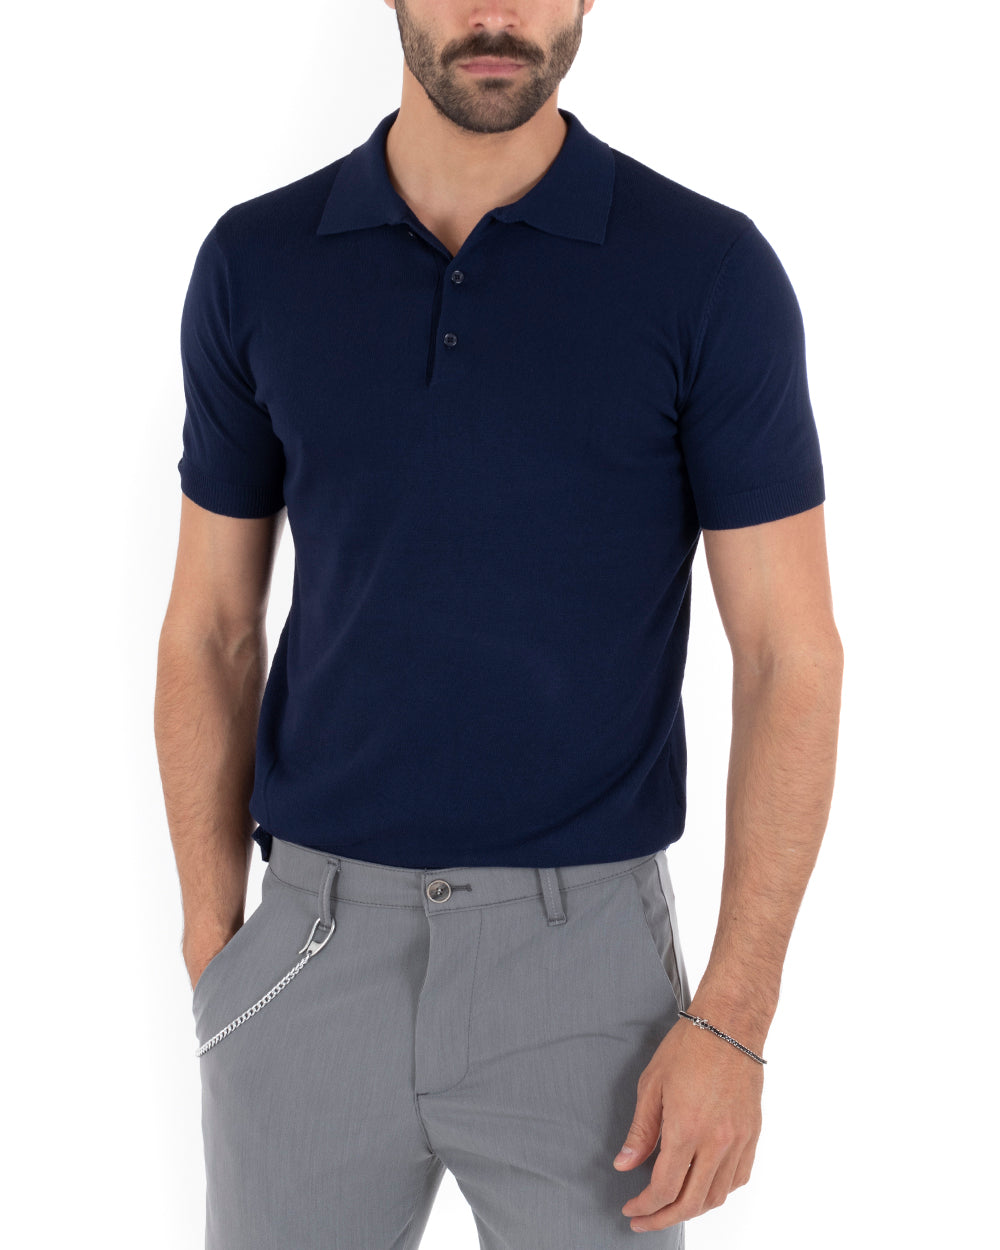 Polo Filo Uomo T-Shirt Manica Corta Con Colletto Bottoni Tinta Unita Blu Casual GIOSAL-TS2629A